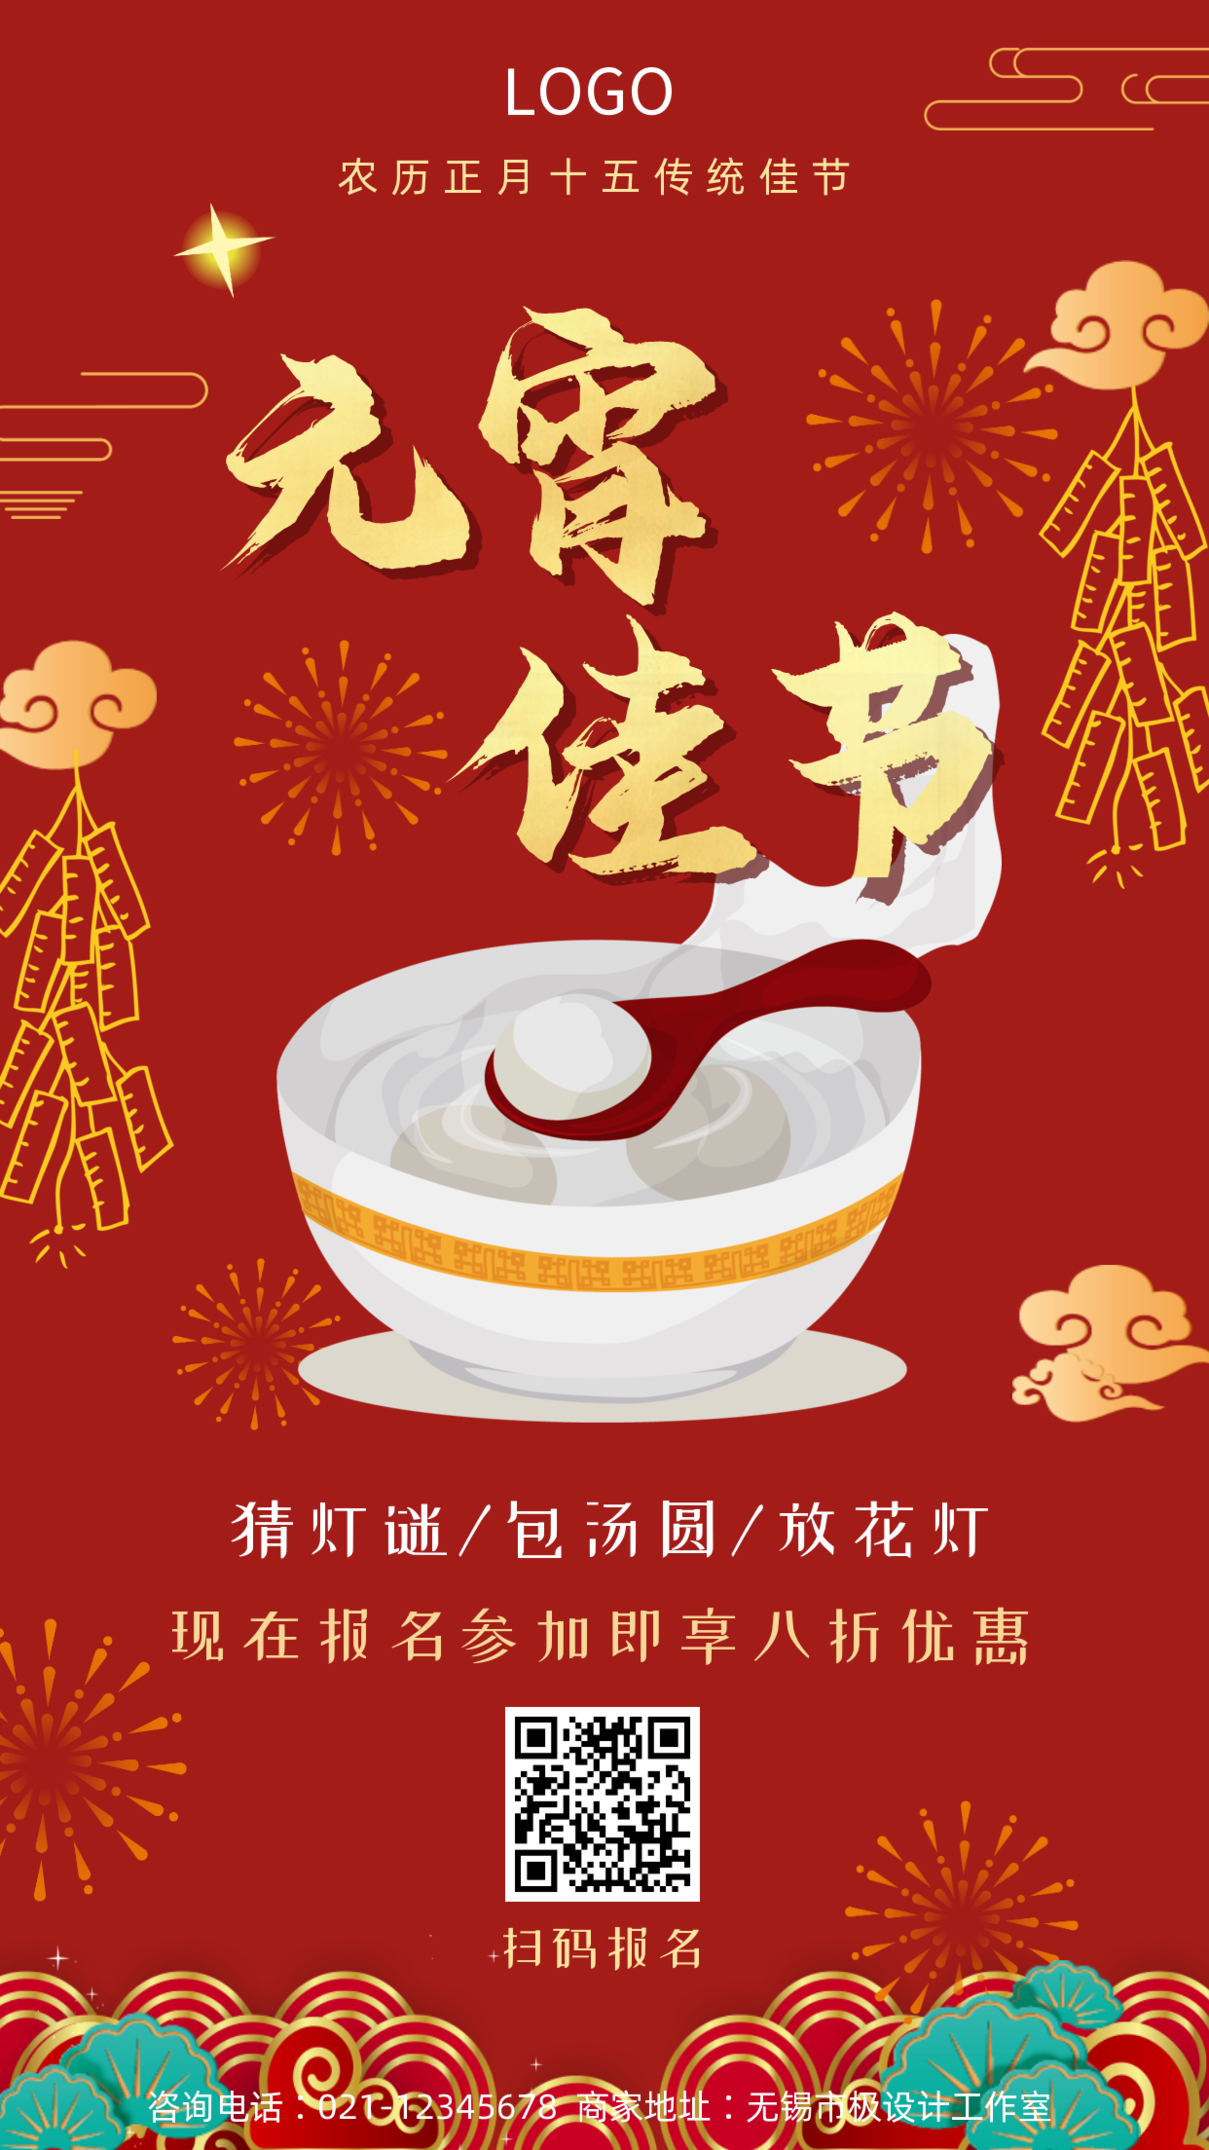 原创中国传统节日元宵节手机海报